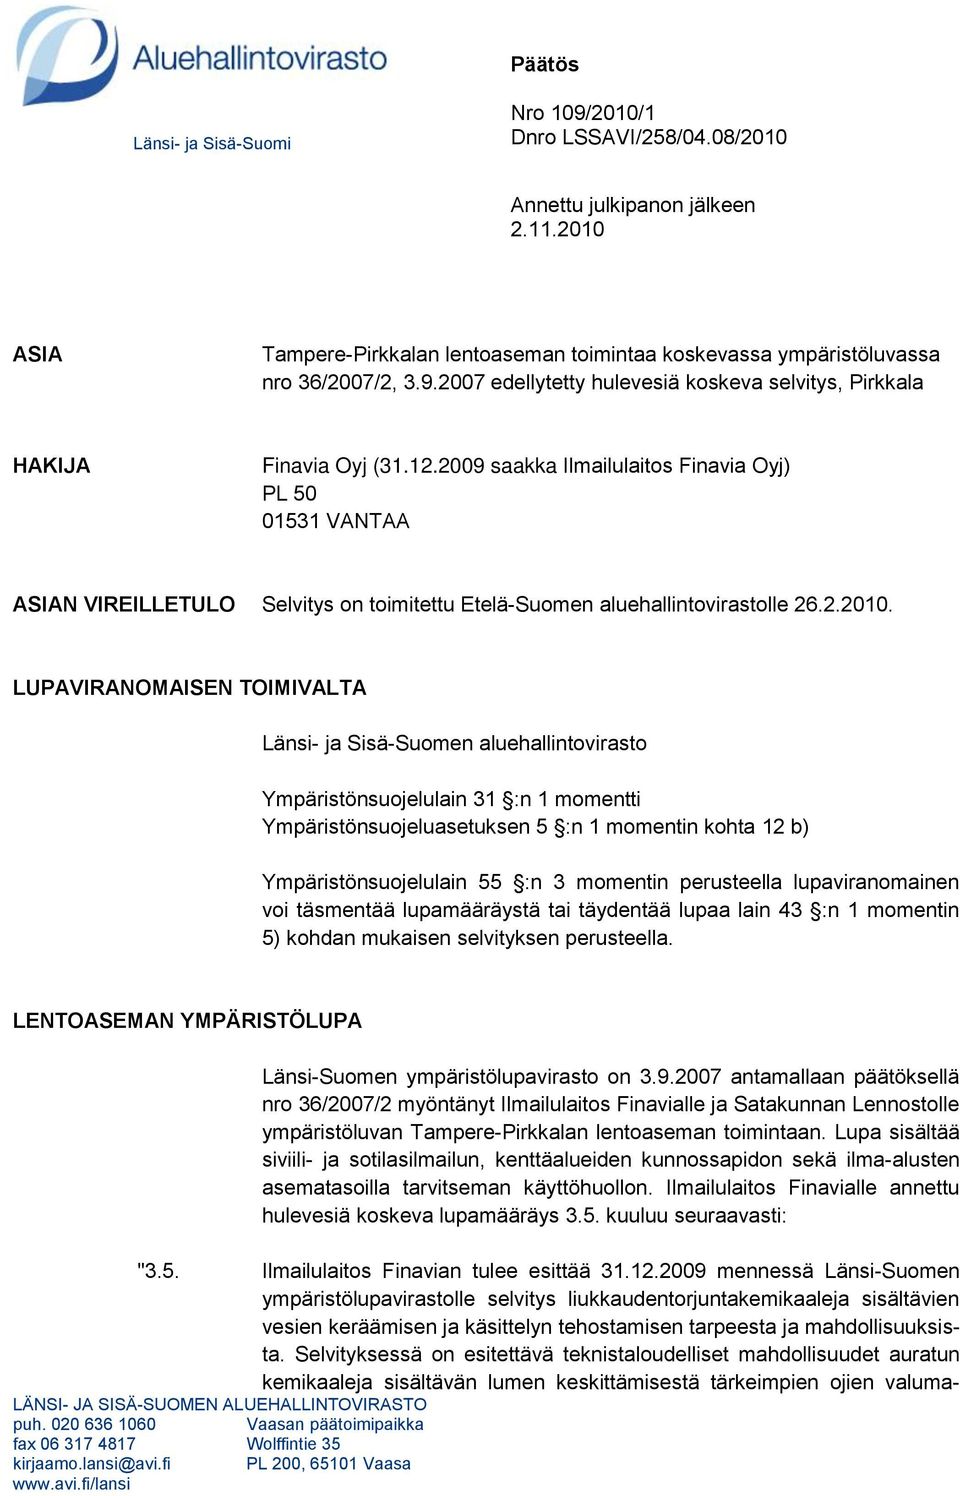 LUPAVIRANOMAISEN TOIMIVALTA Länsi- ja Sisä-Suomen aluehallintovirasto Ympäristönsuojelulain 31 :n 1 momentti Ympäristönsuojeluasetuksen 5 :n 1 momentin kohta 12 b) Ympäristönsuojelulain 55 :n 3